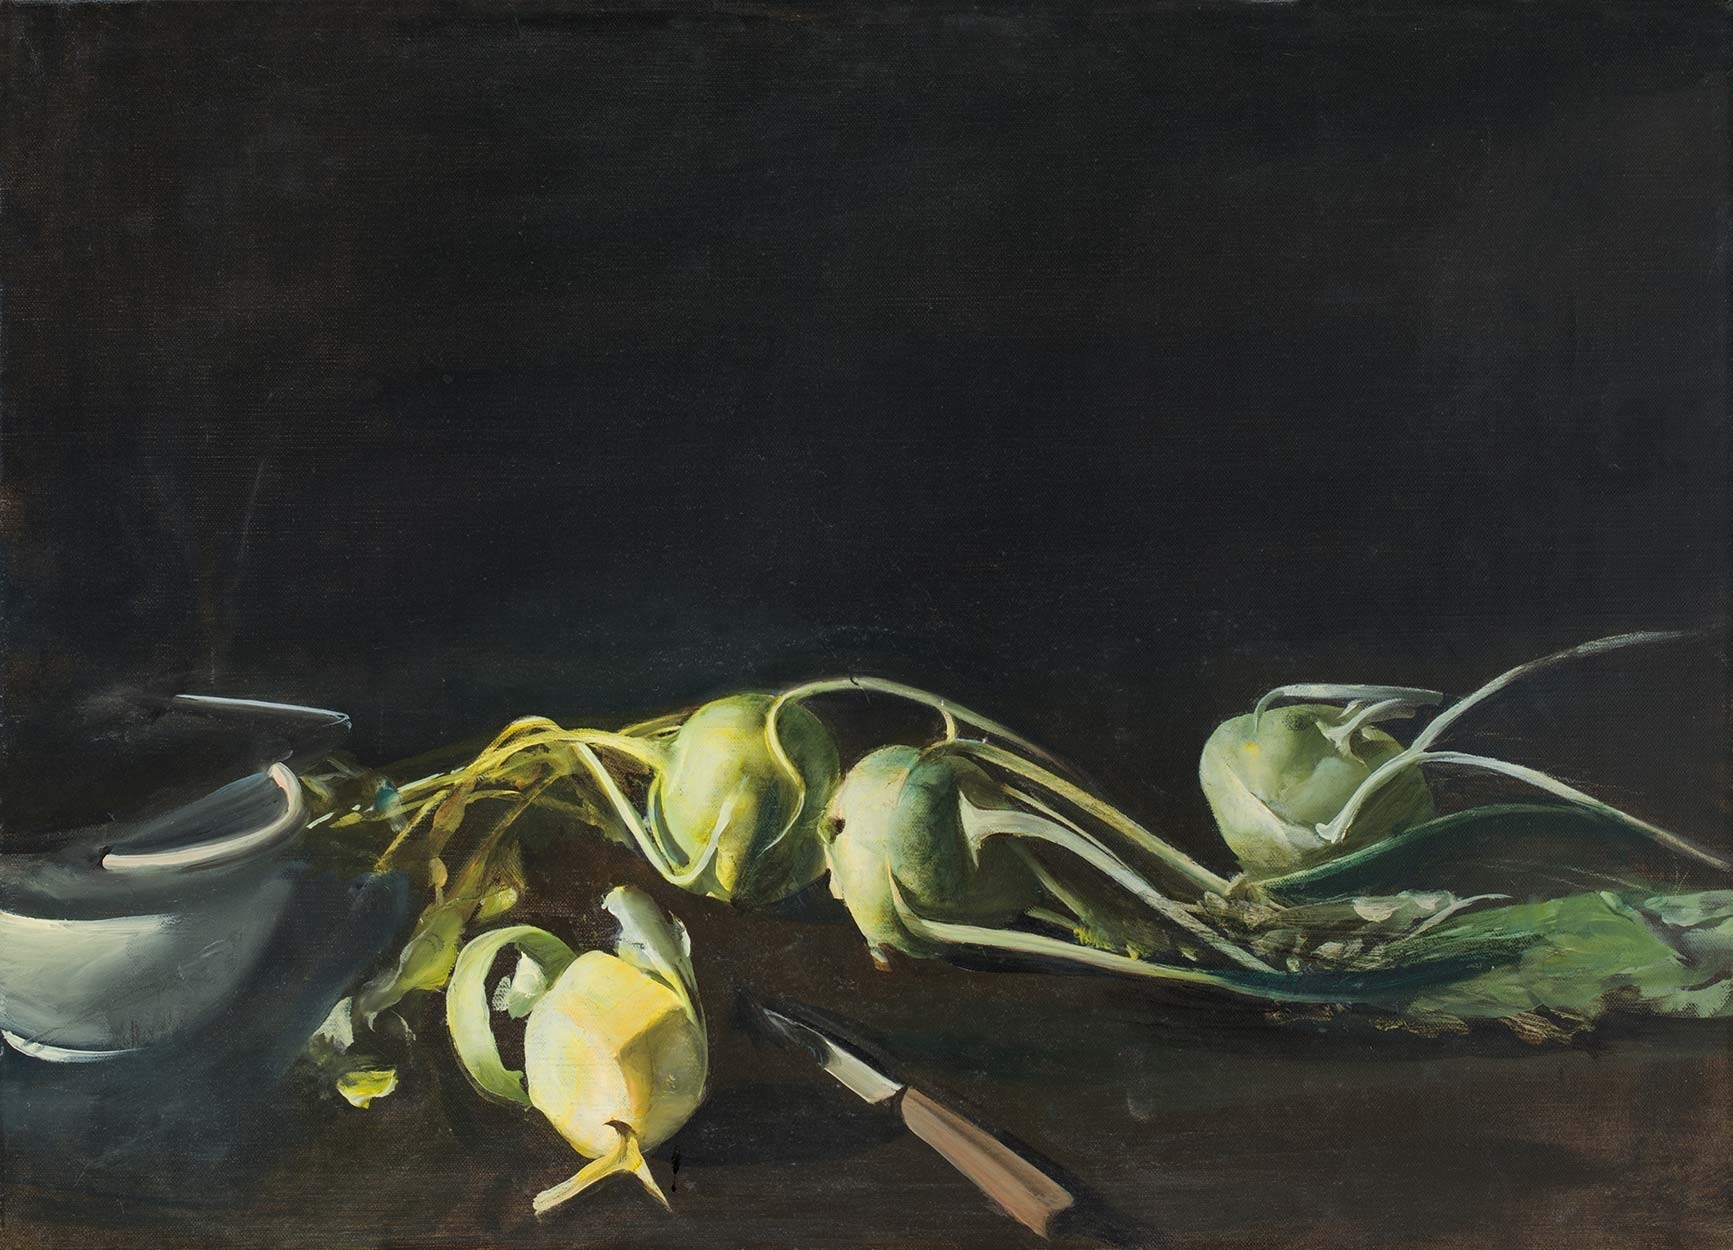 Csernus Tibor (1927-2007) Turnip cabbage, 1983